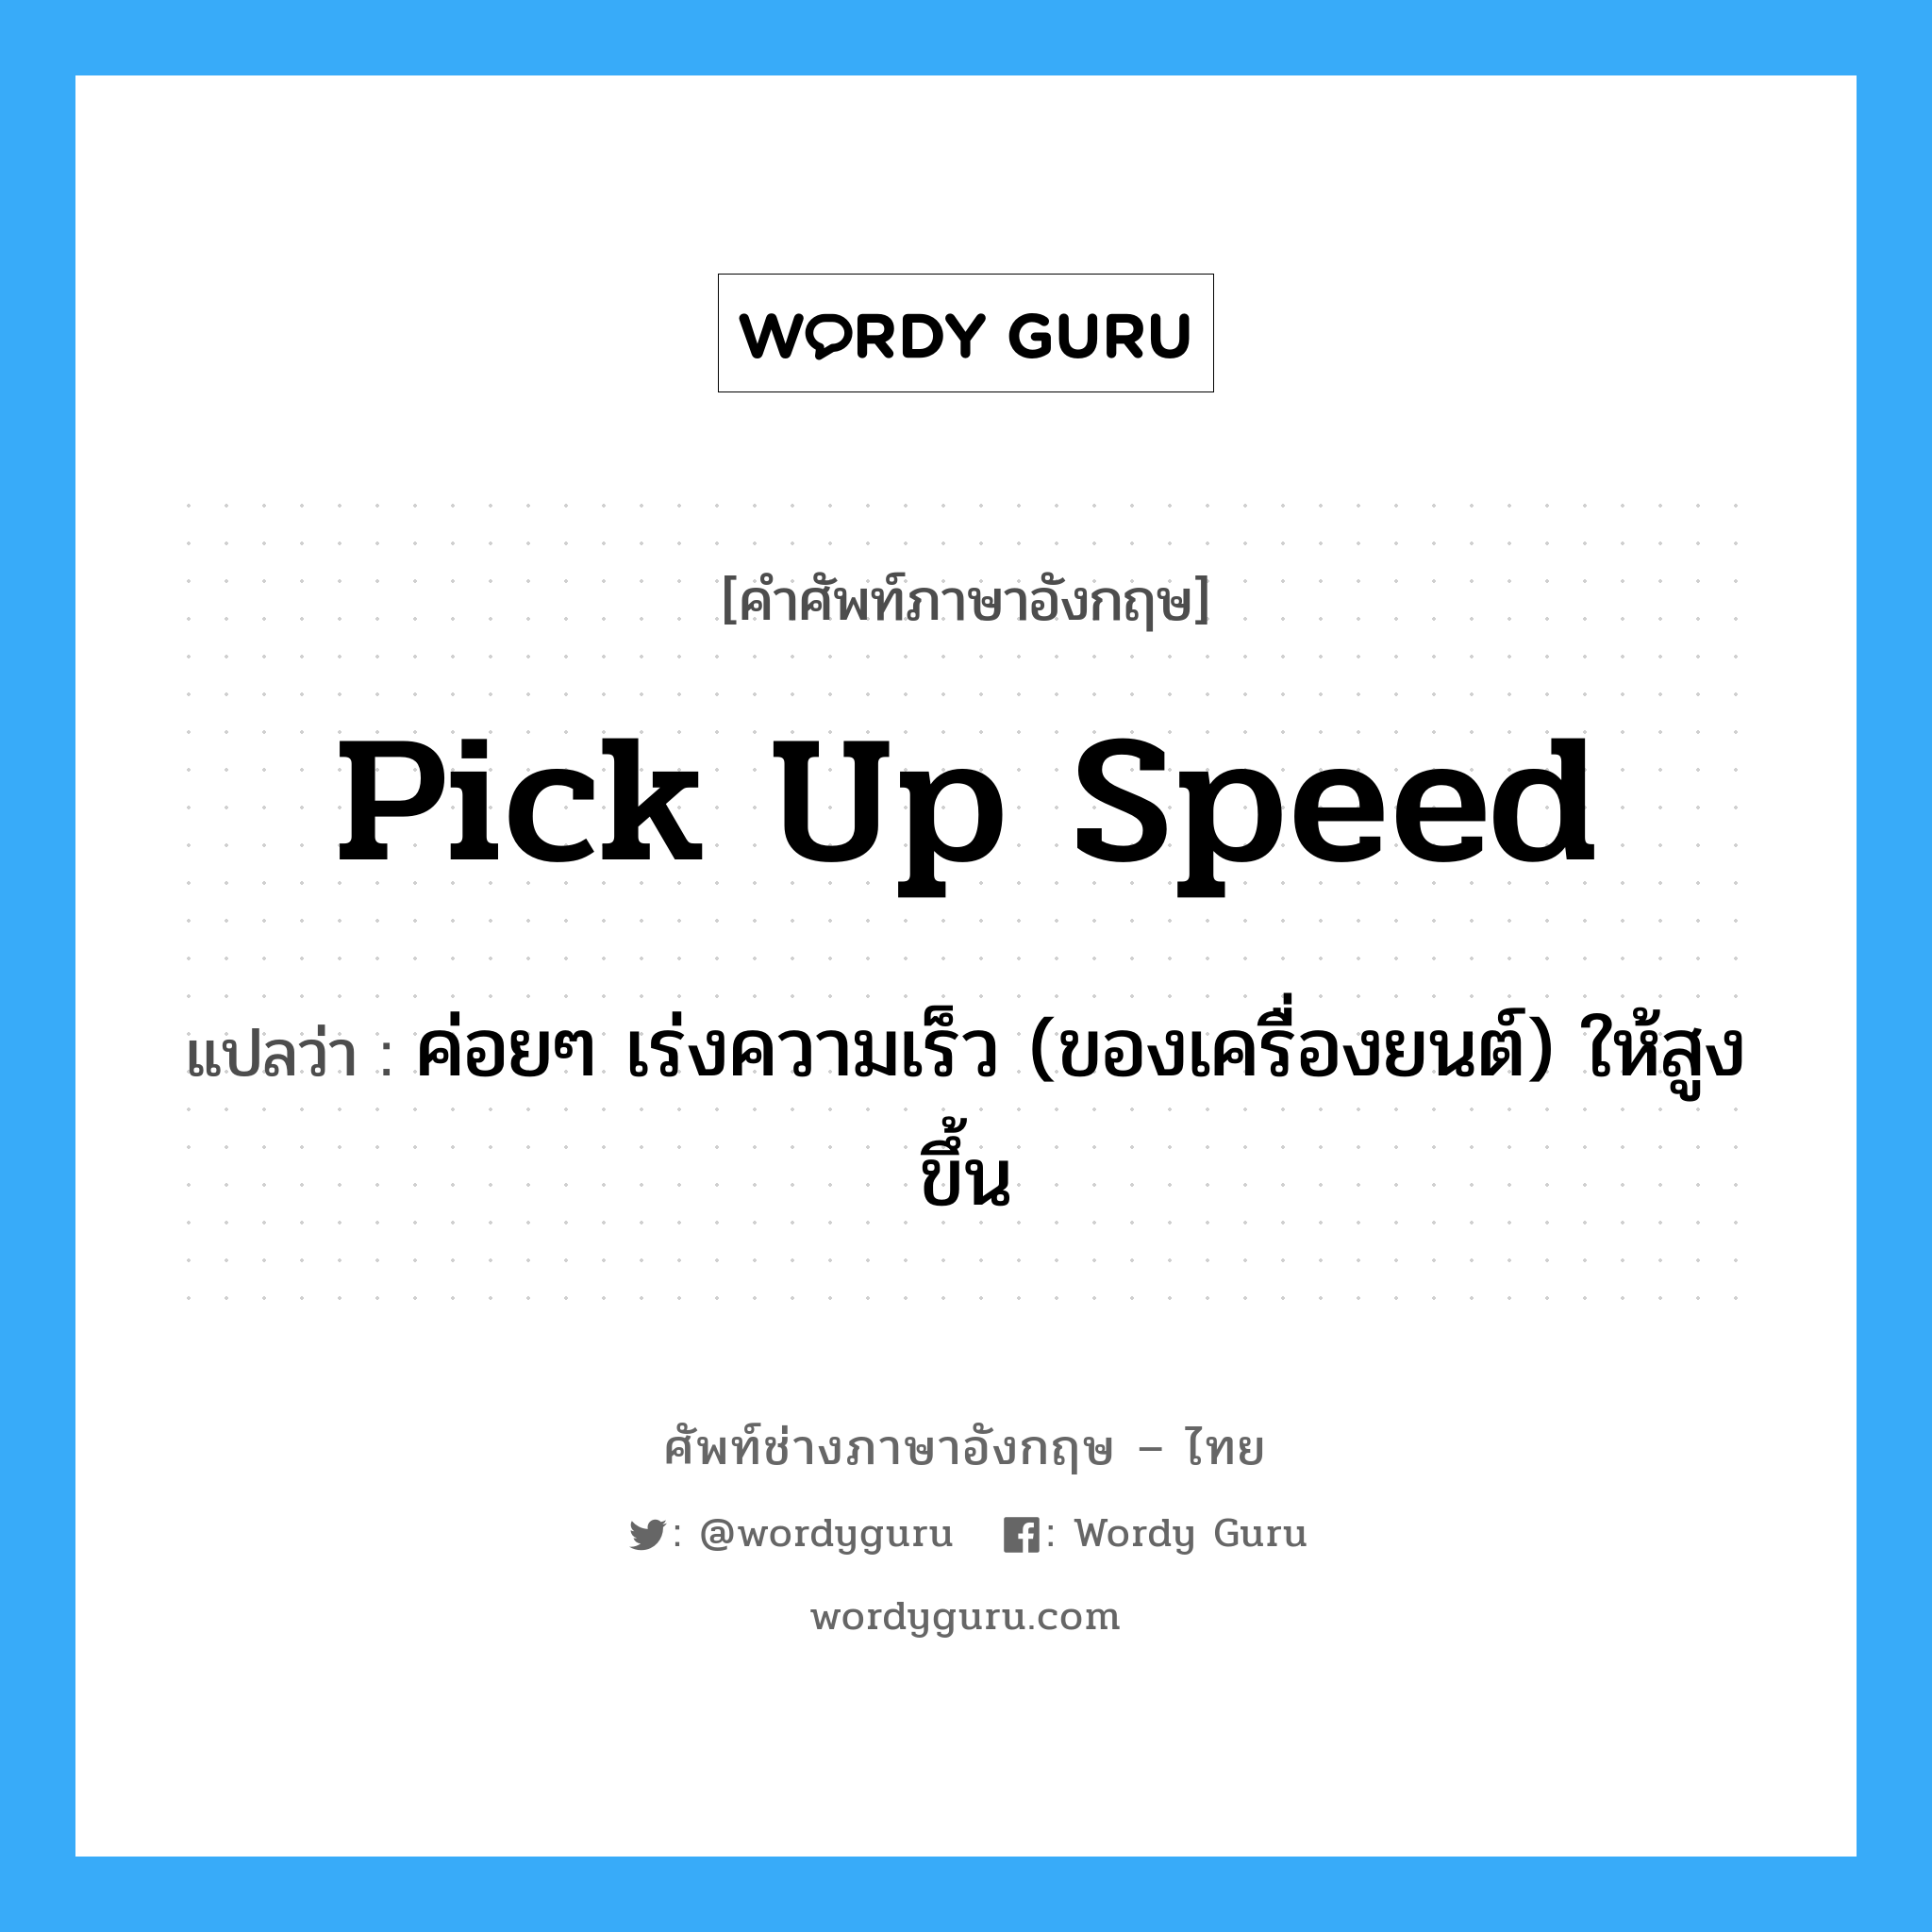 pick up speed แปลว่า?, คำศัพท์ช่างภาษาอังกฤษ - ไทย pick up speed คำศัพท์ภาษาอังกฤษ pick up speed แปลว่า ค่อยๆ เร่งความเร็ว (ของเครื่องยนต์) ให้สูงขึ้น